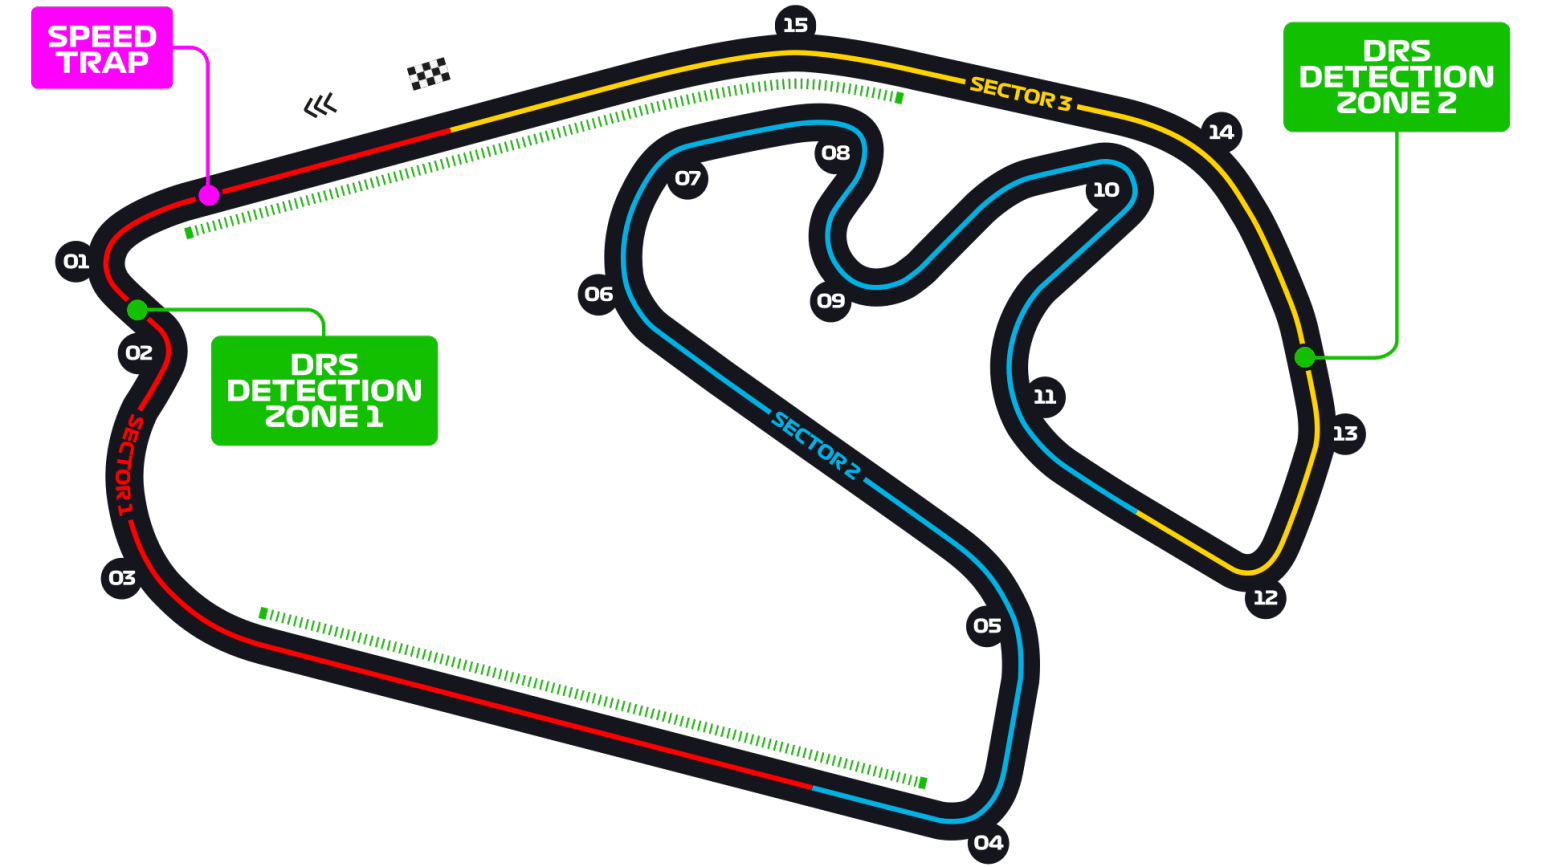 Interlagos Sao Paolo circuit